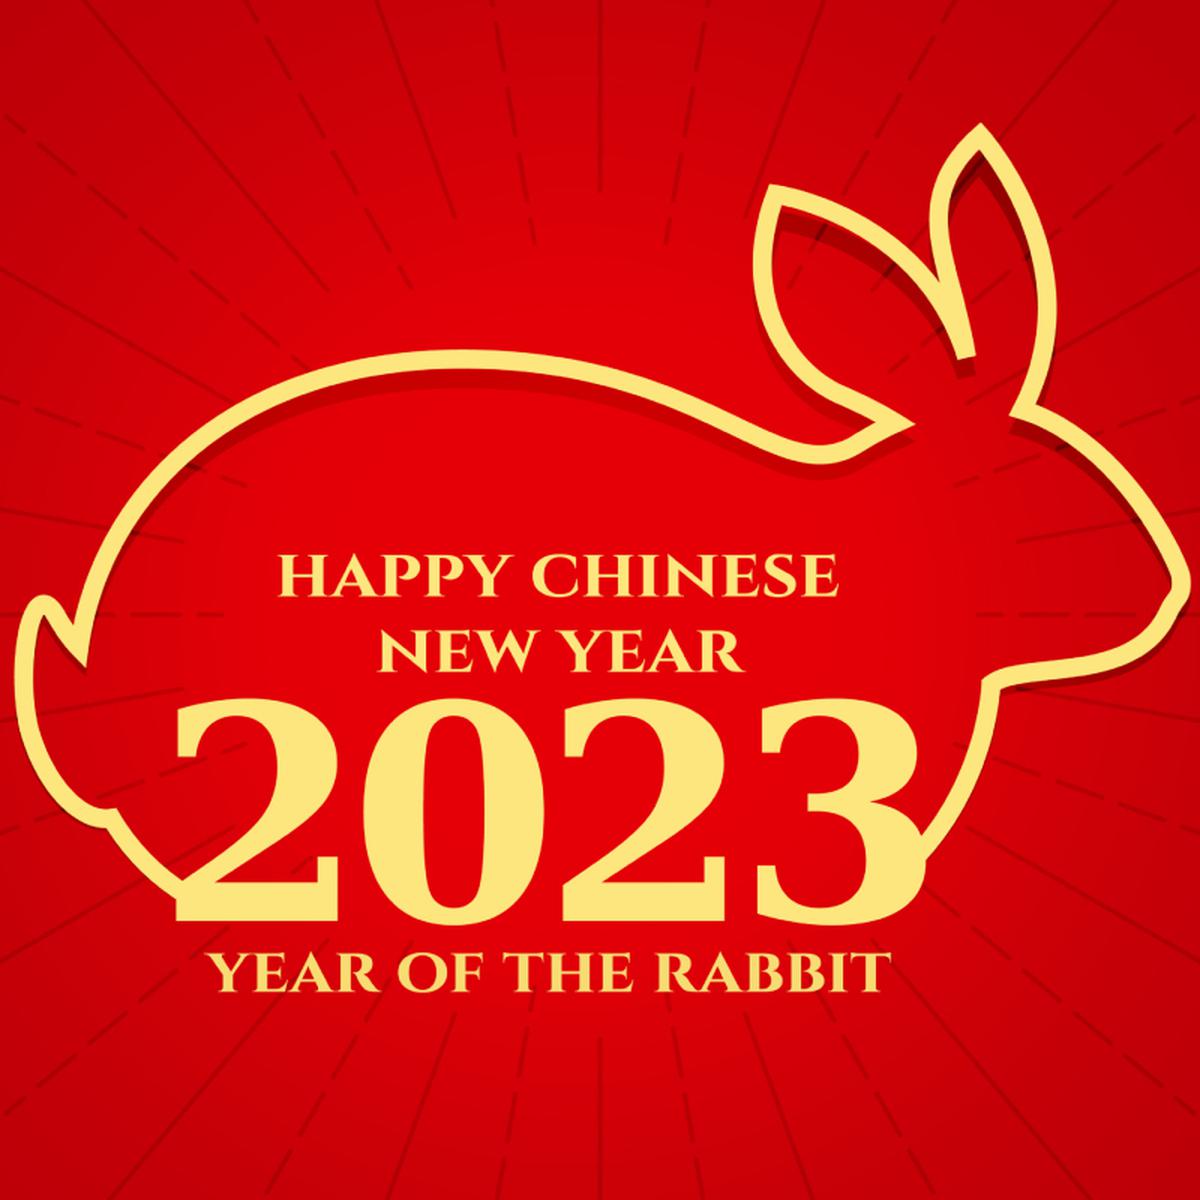 Horóscopo Chino: 3 animales que tendrán una habilidad especial para  conseguir dinero durante agosto 2023